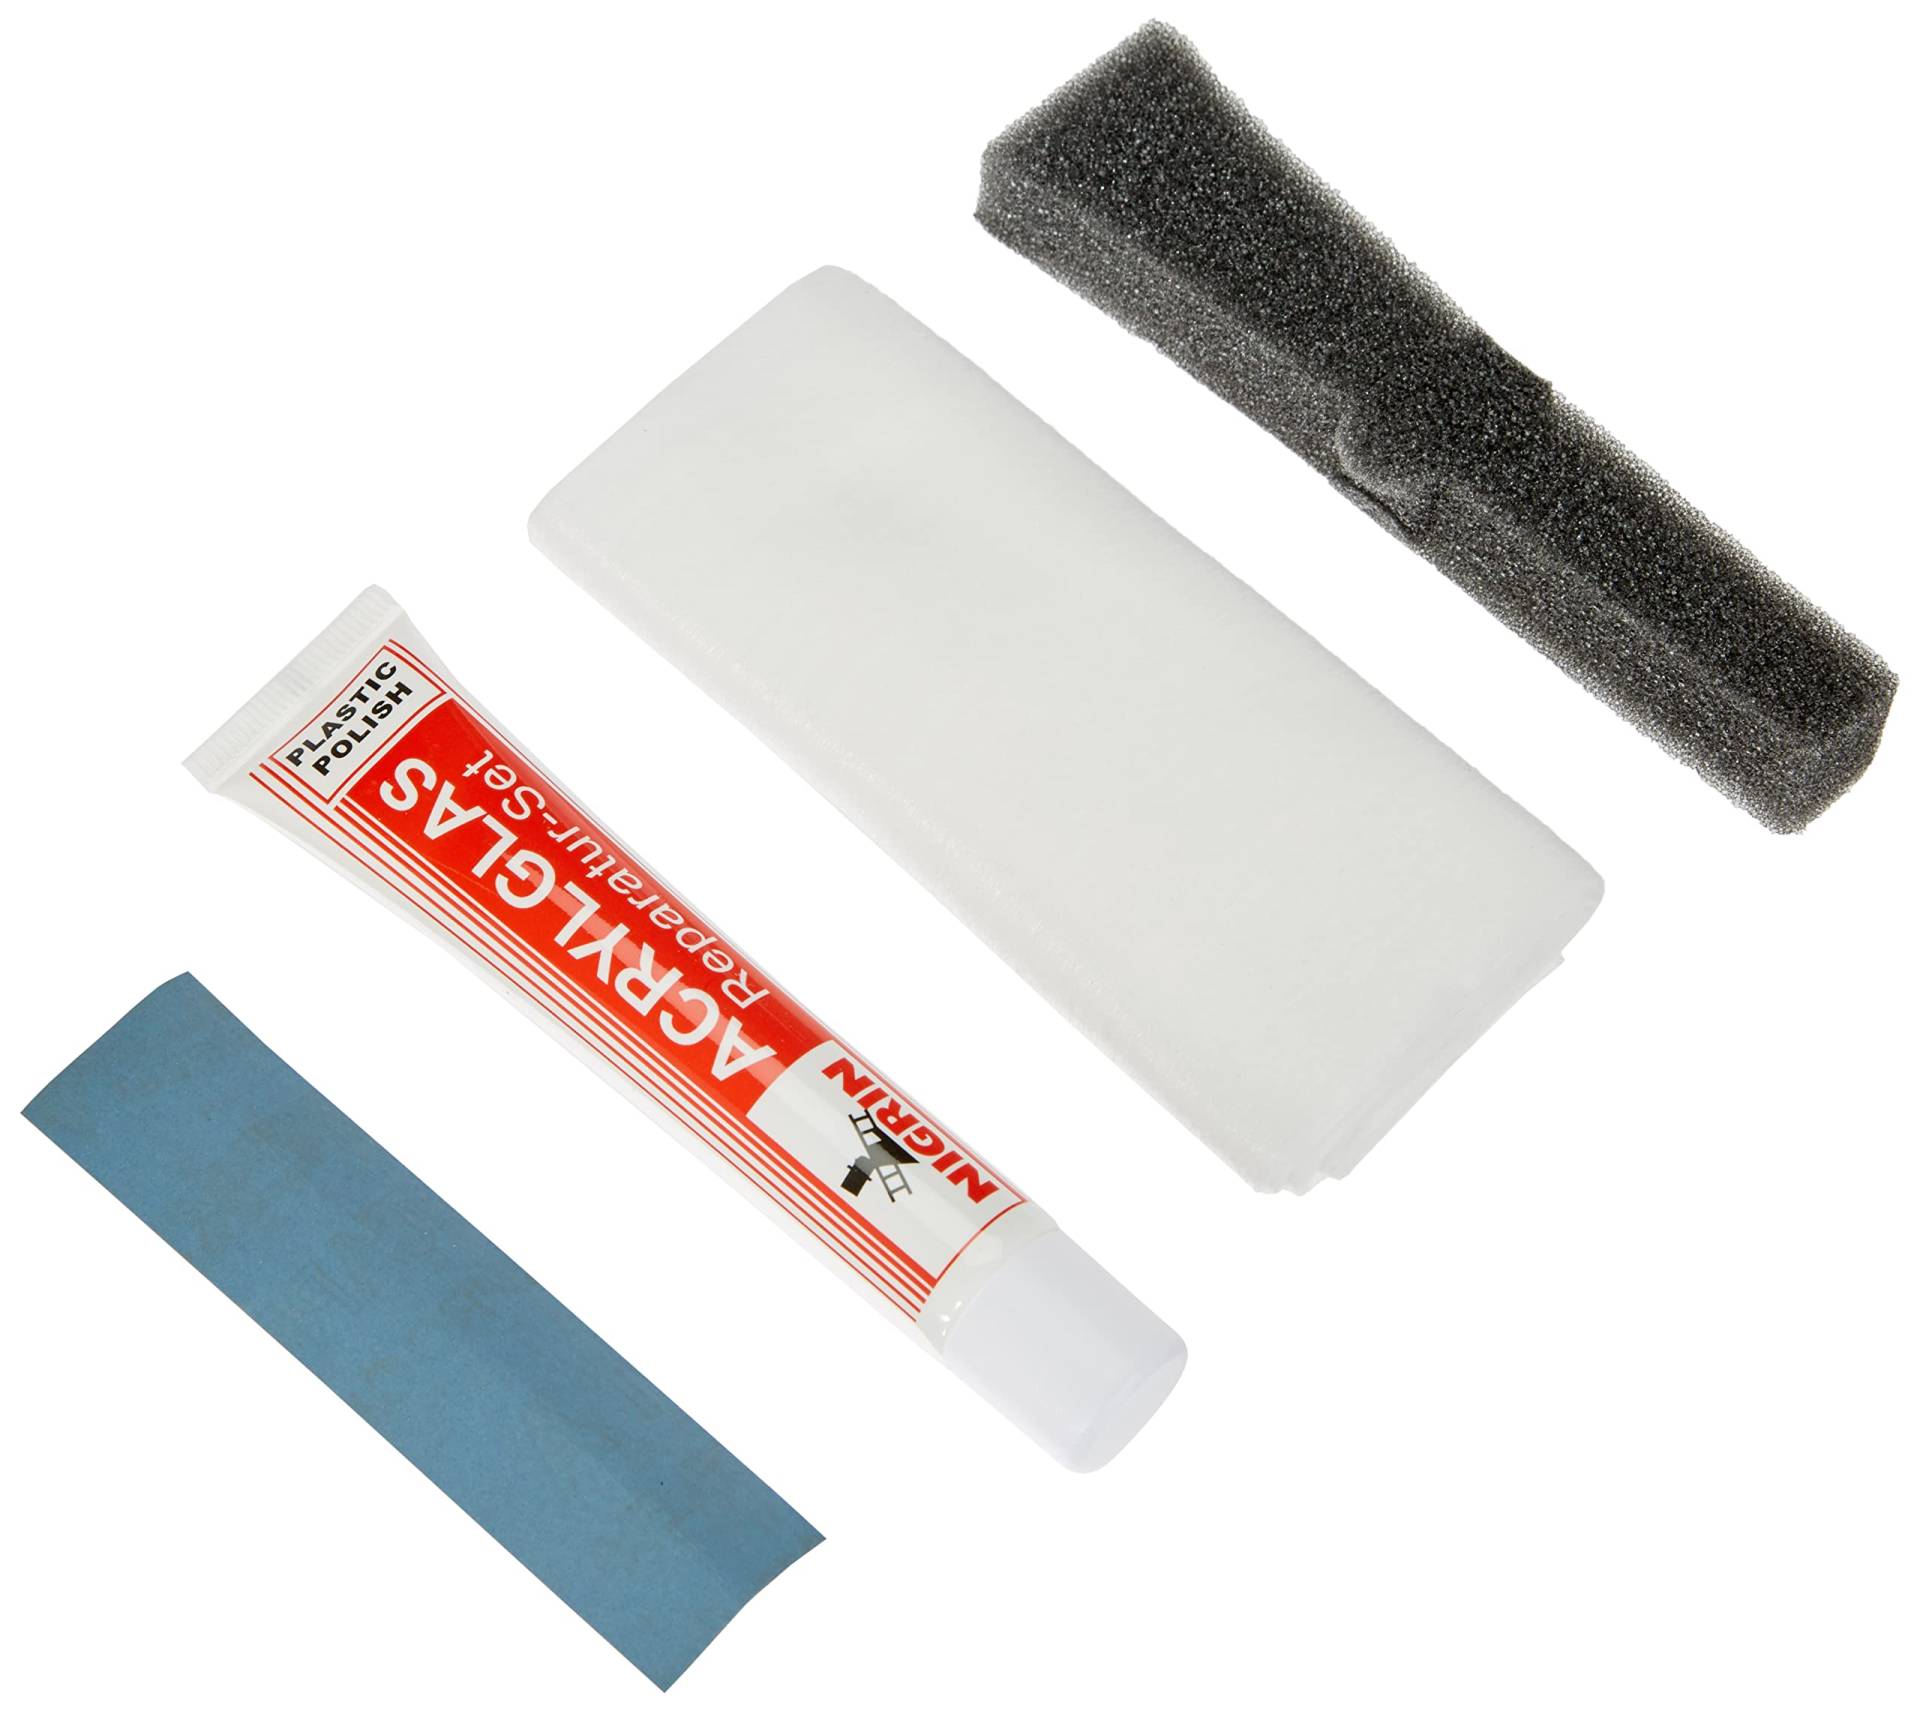 NIGRIN 73914 RepairTec Acryl-und Plexiglas Politur-Set: 1 x Kunststoff-Politurpast, 1 x Schleifpapier, 1 x Poliertuch von NIGRIN